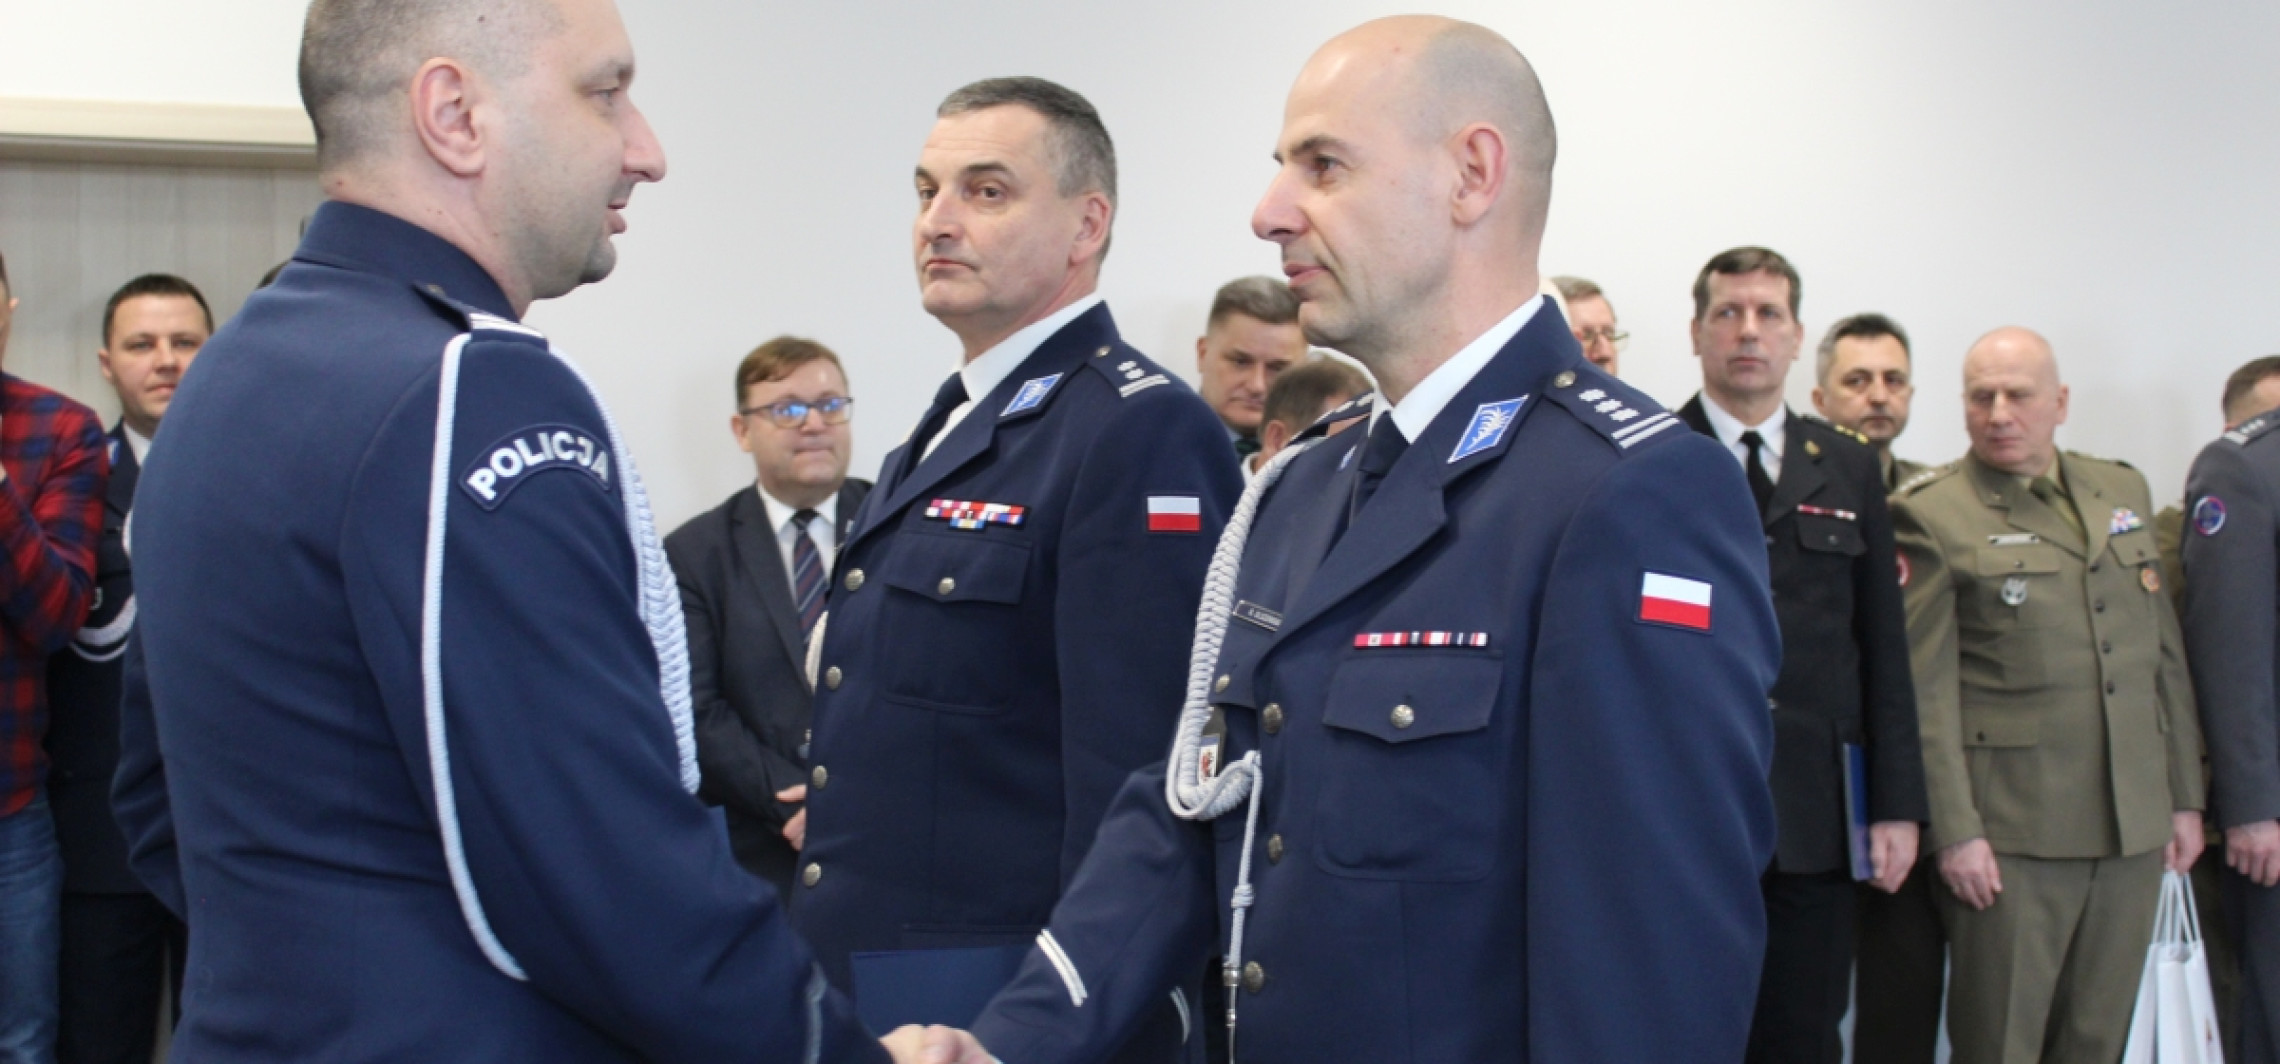 Inowrocław - Inowrocławska policja ma nowego szefa